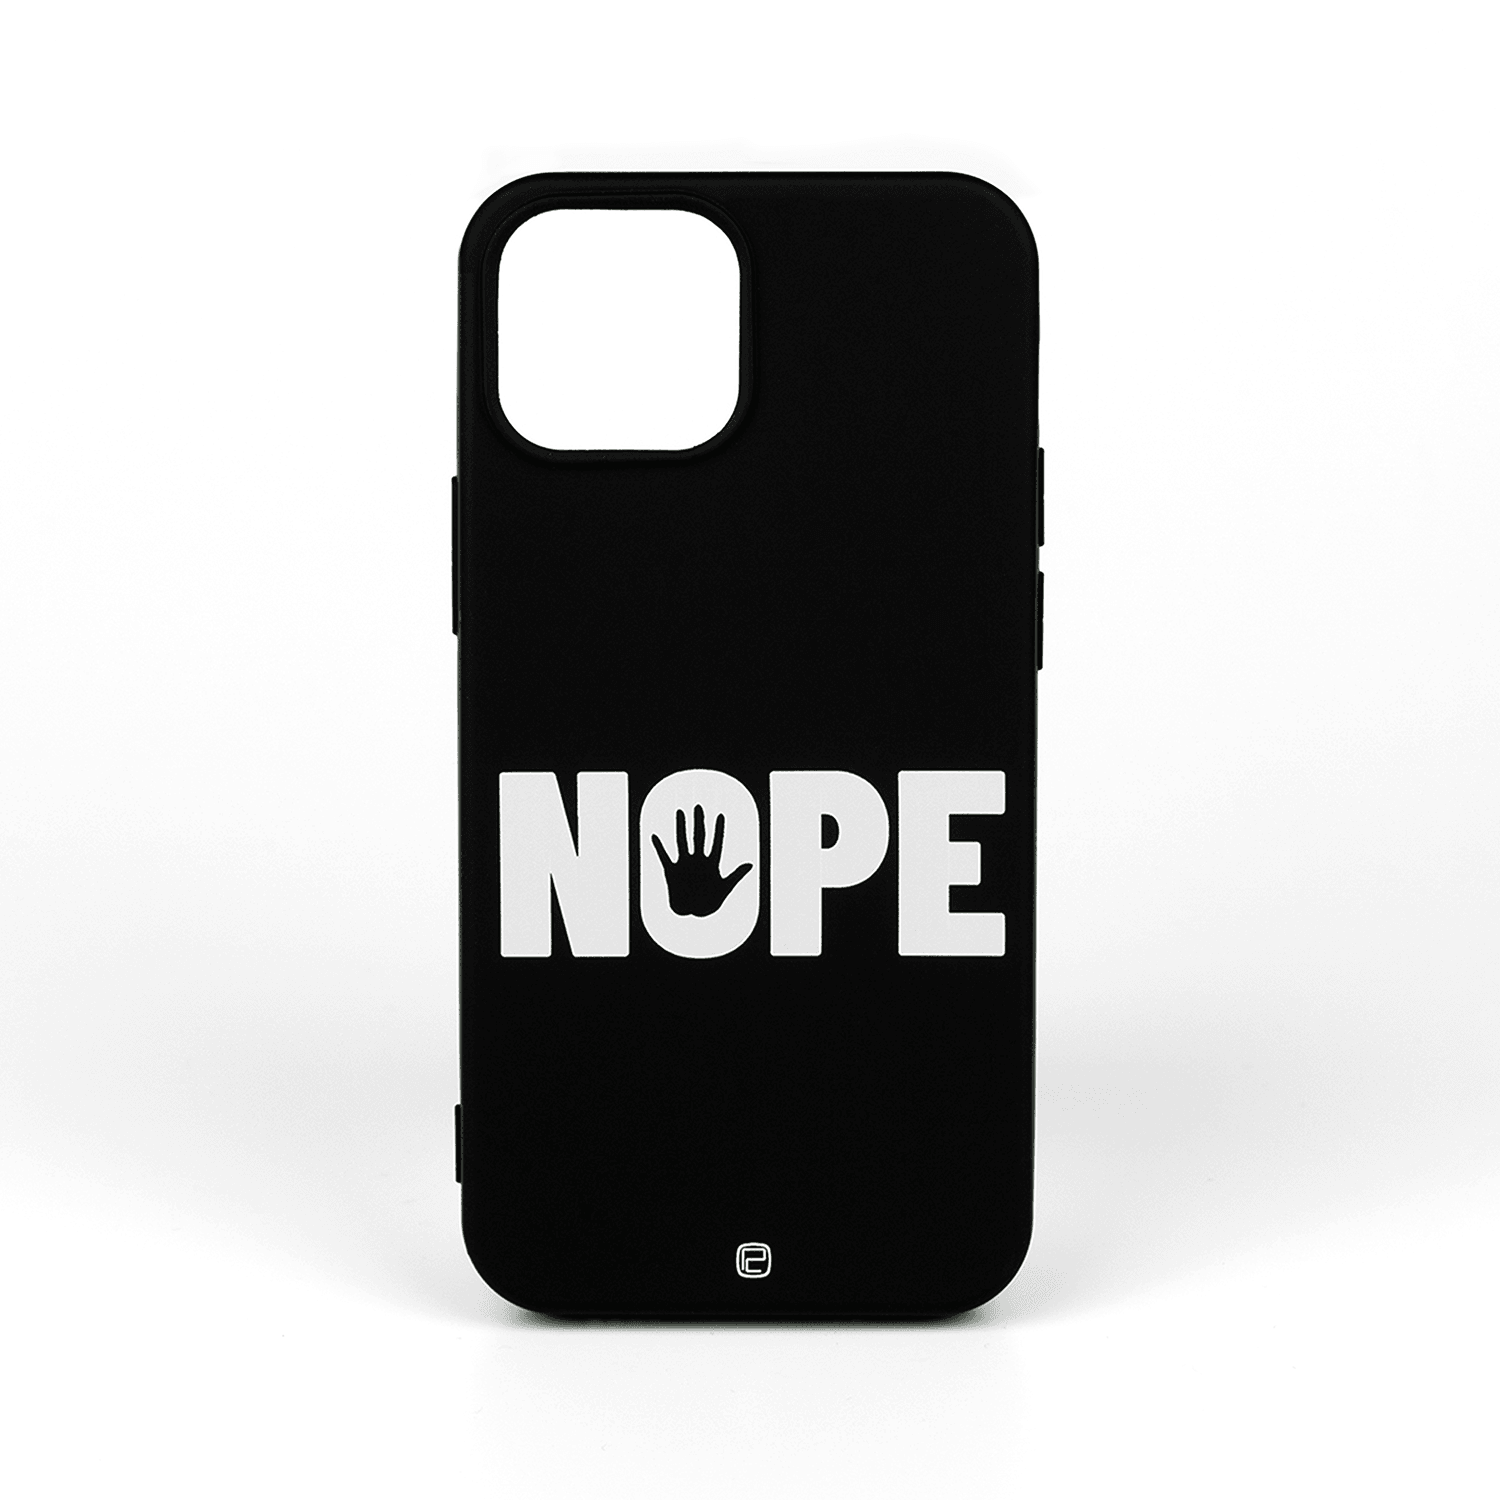 iPhone Kılıfı Nope Logotype